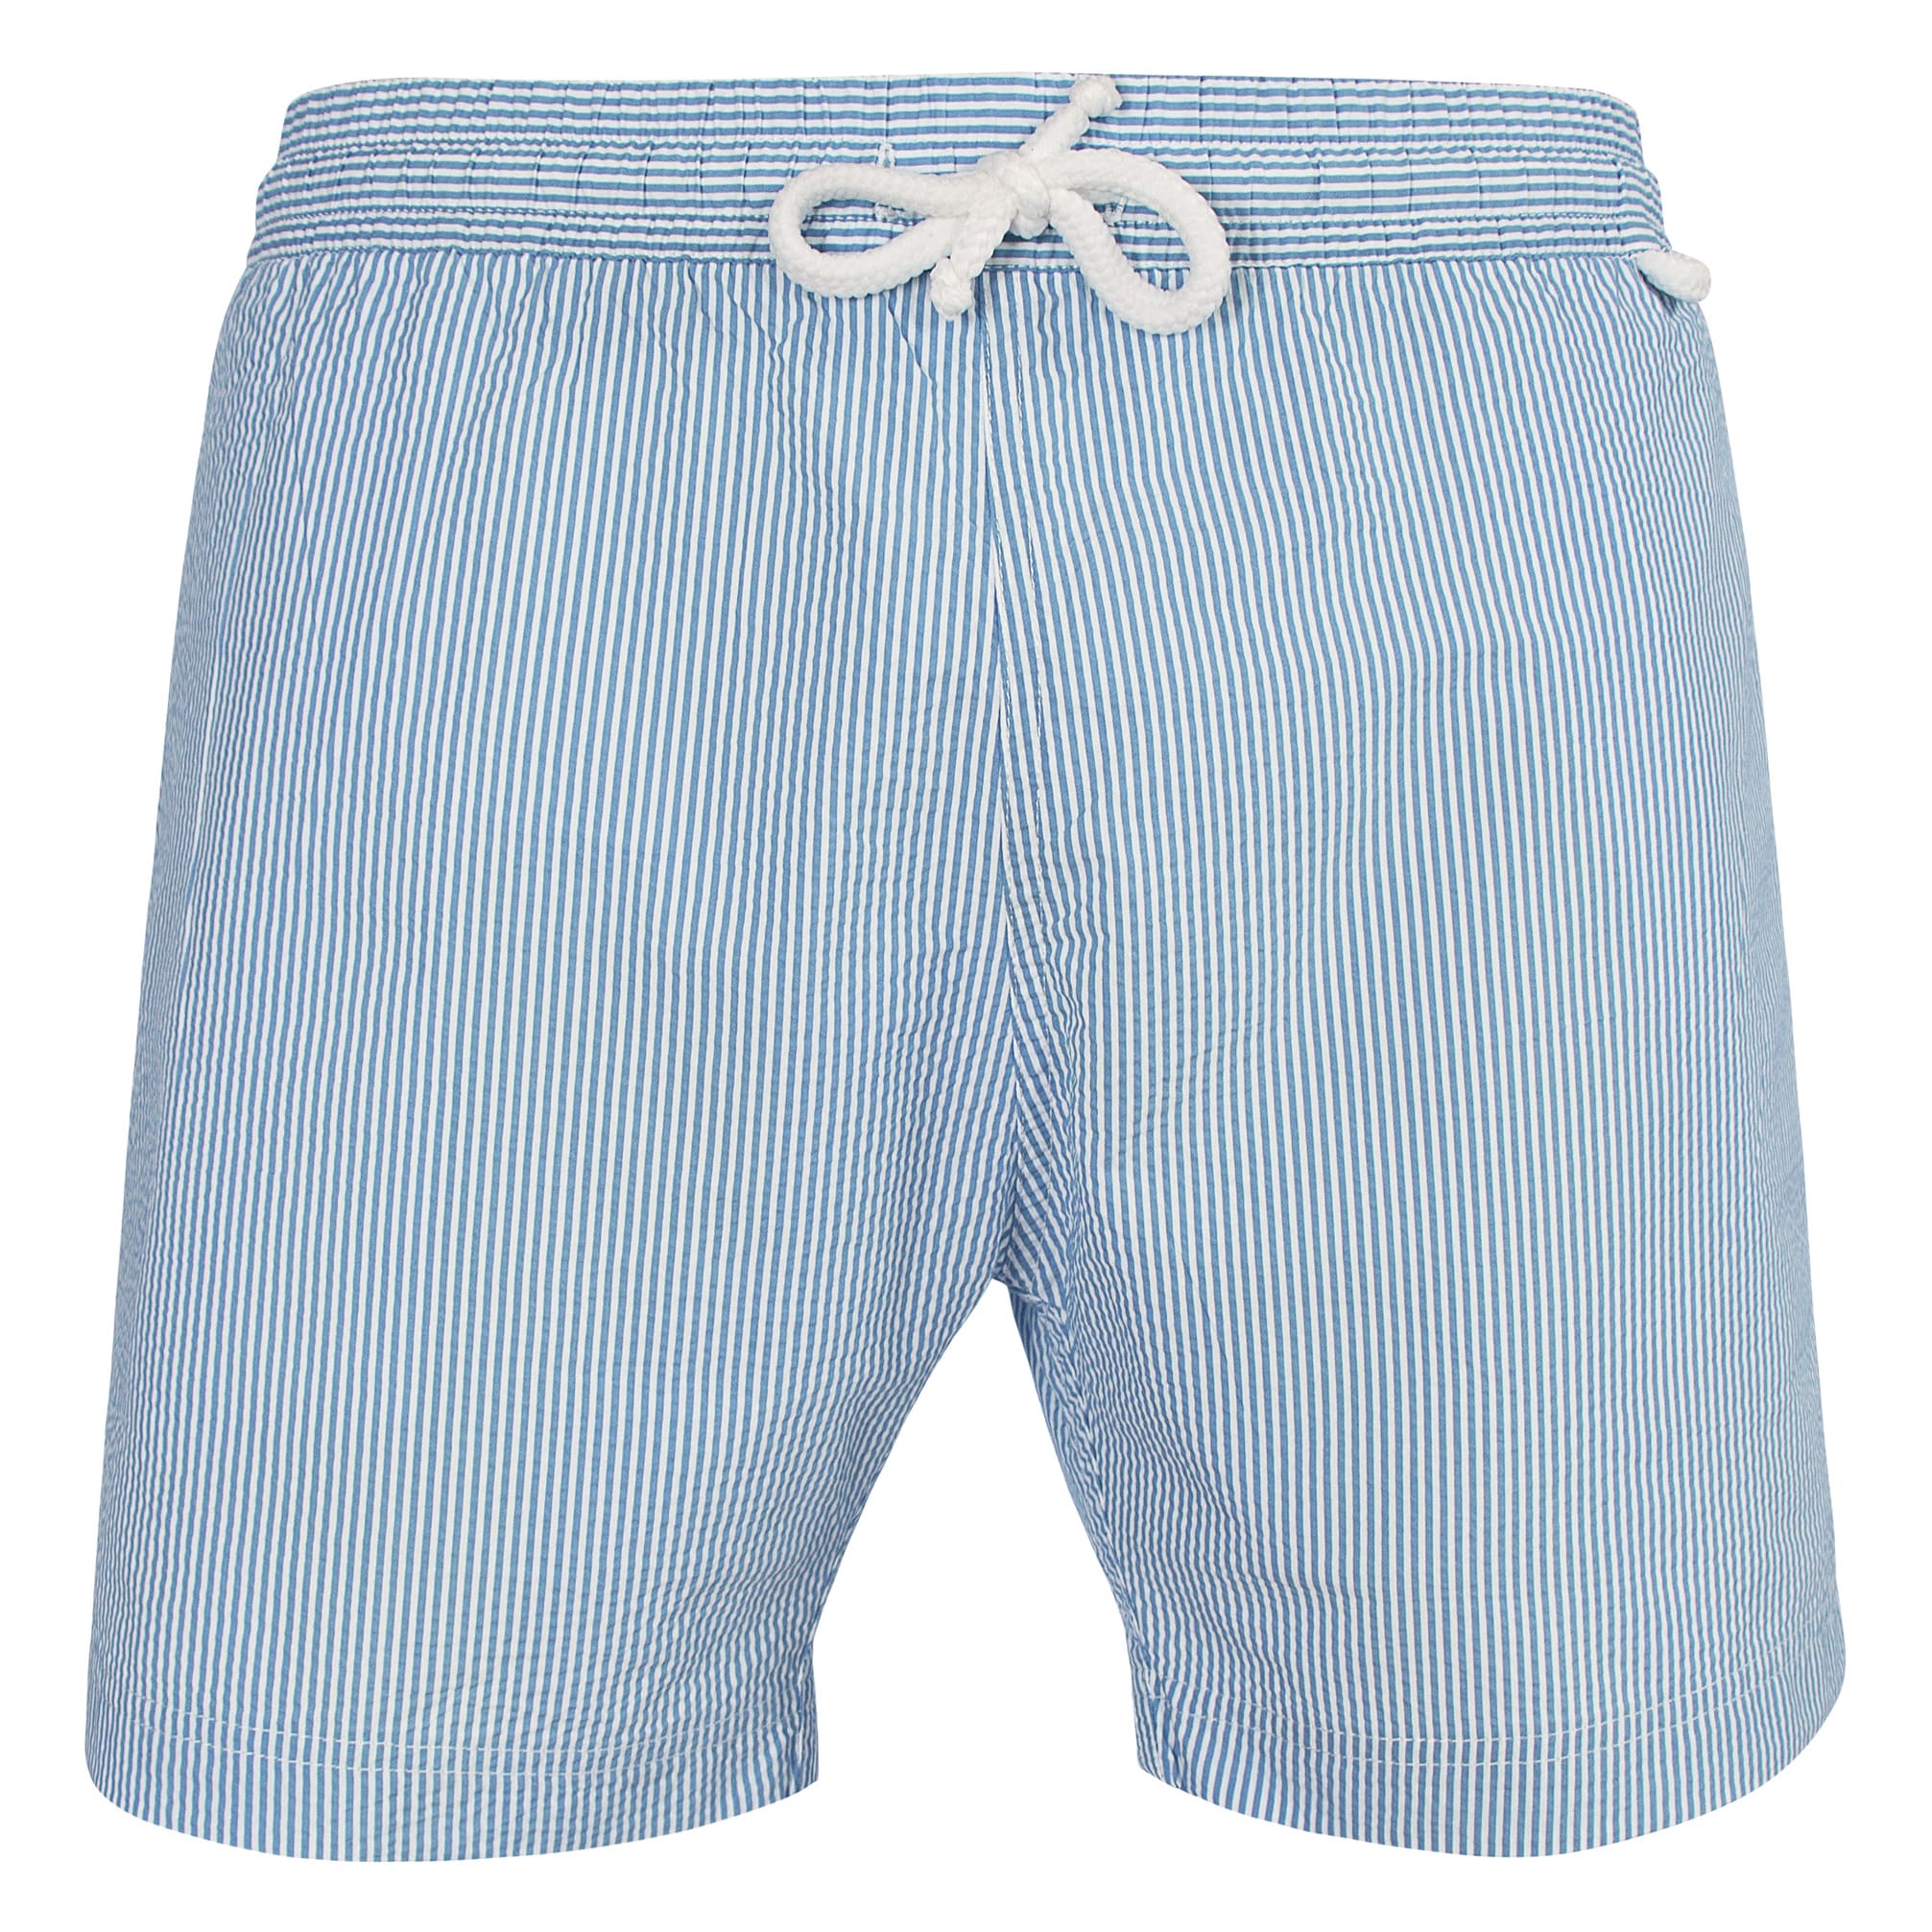 jim 782 - Medium stripes | Maillot Short de bain homme bleu ciel et blanc